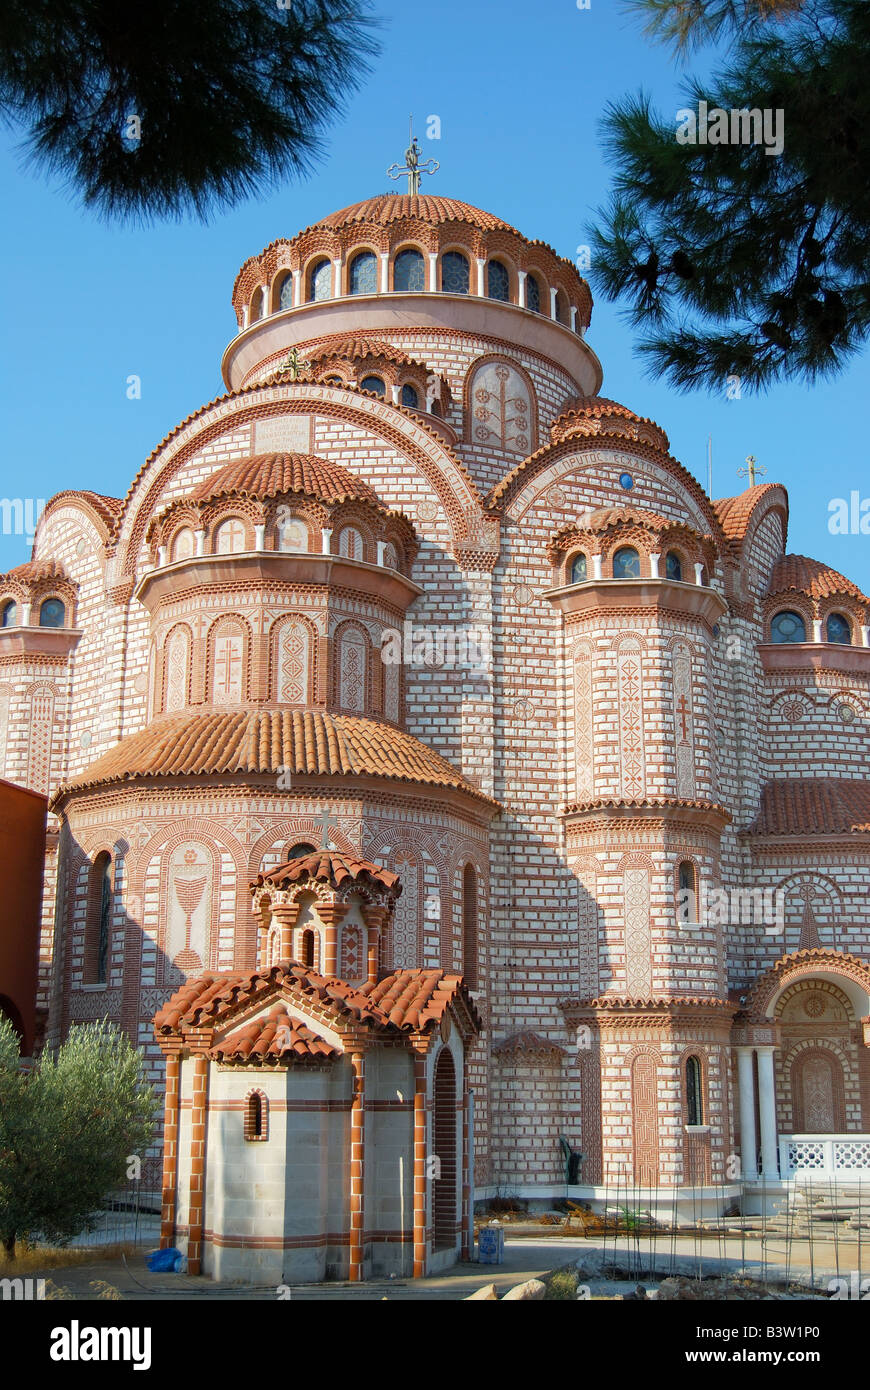 Nouvelle église orthodoxe grecque, Nea Moudania, Chalcidique, Macédoine Centrale, Grèce Banque D'Images